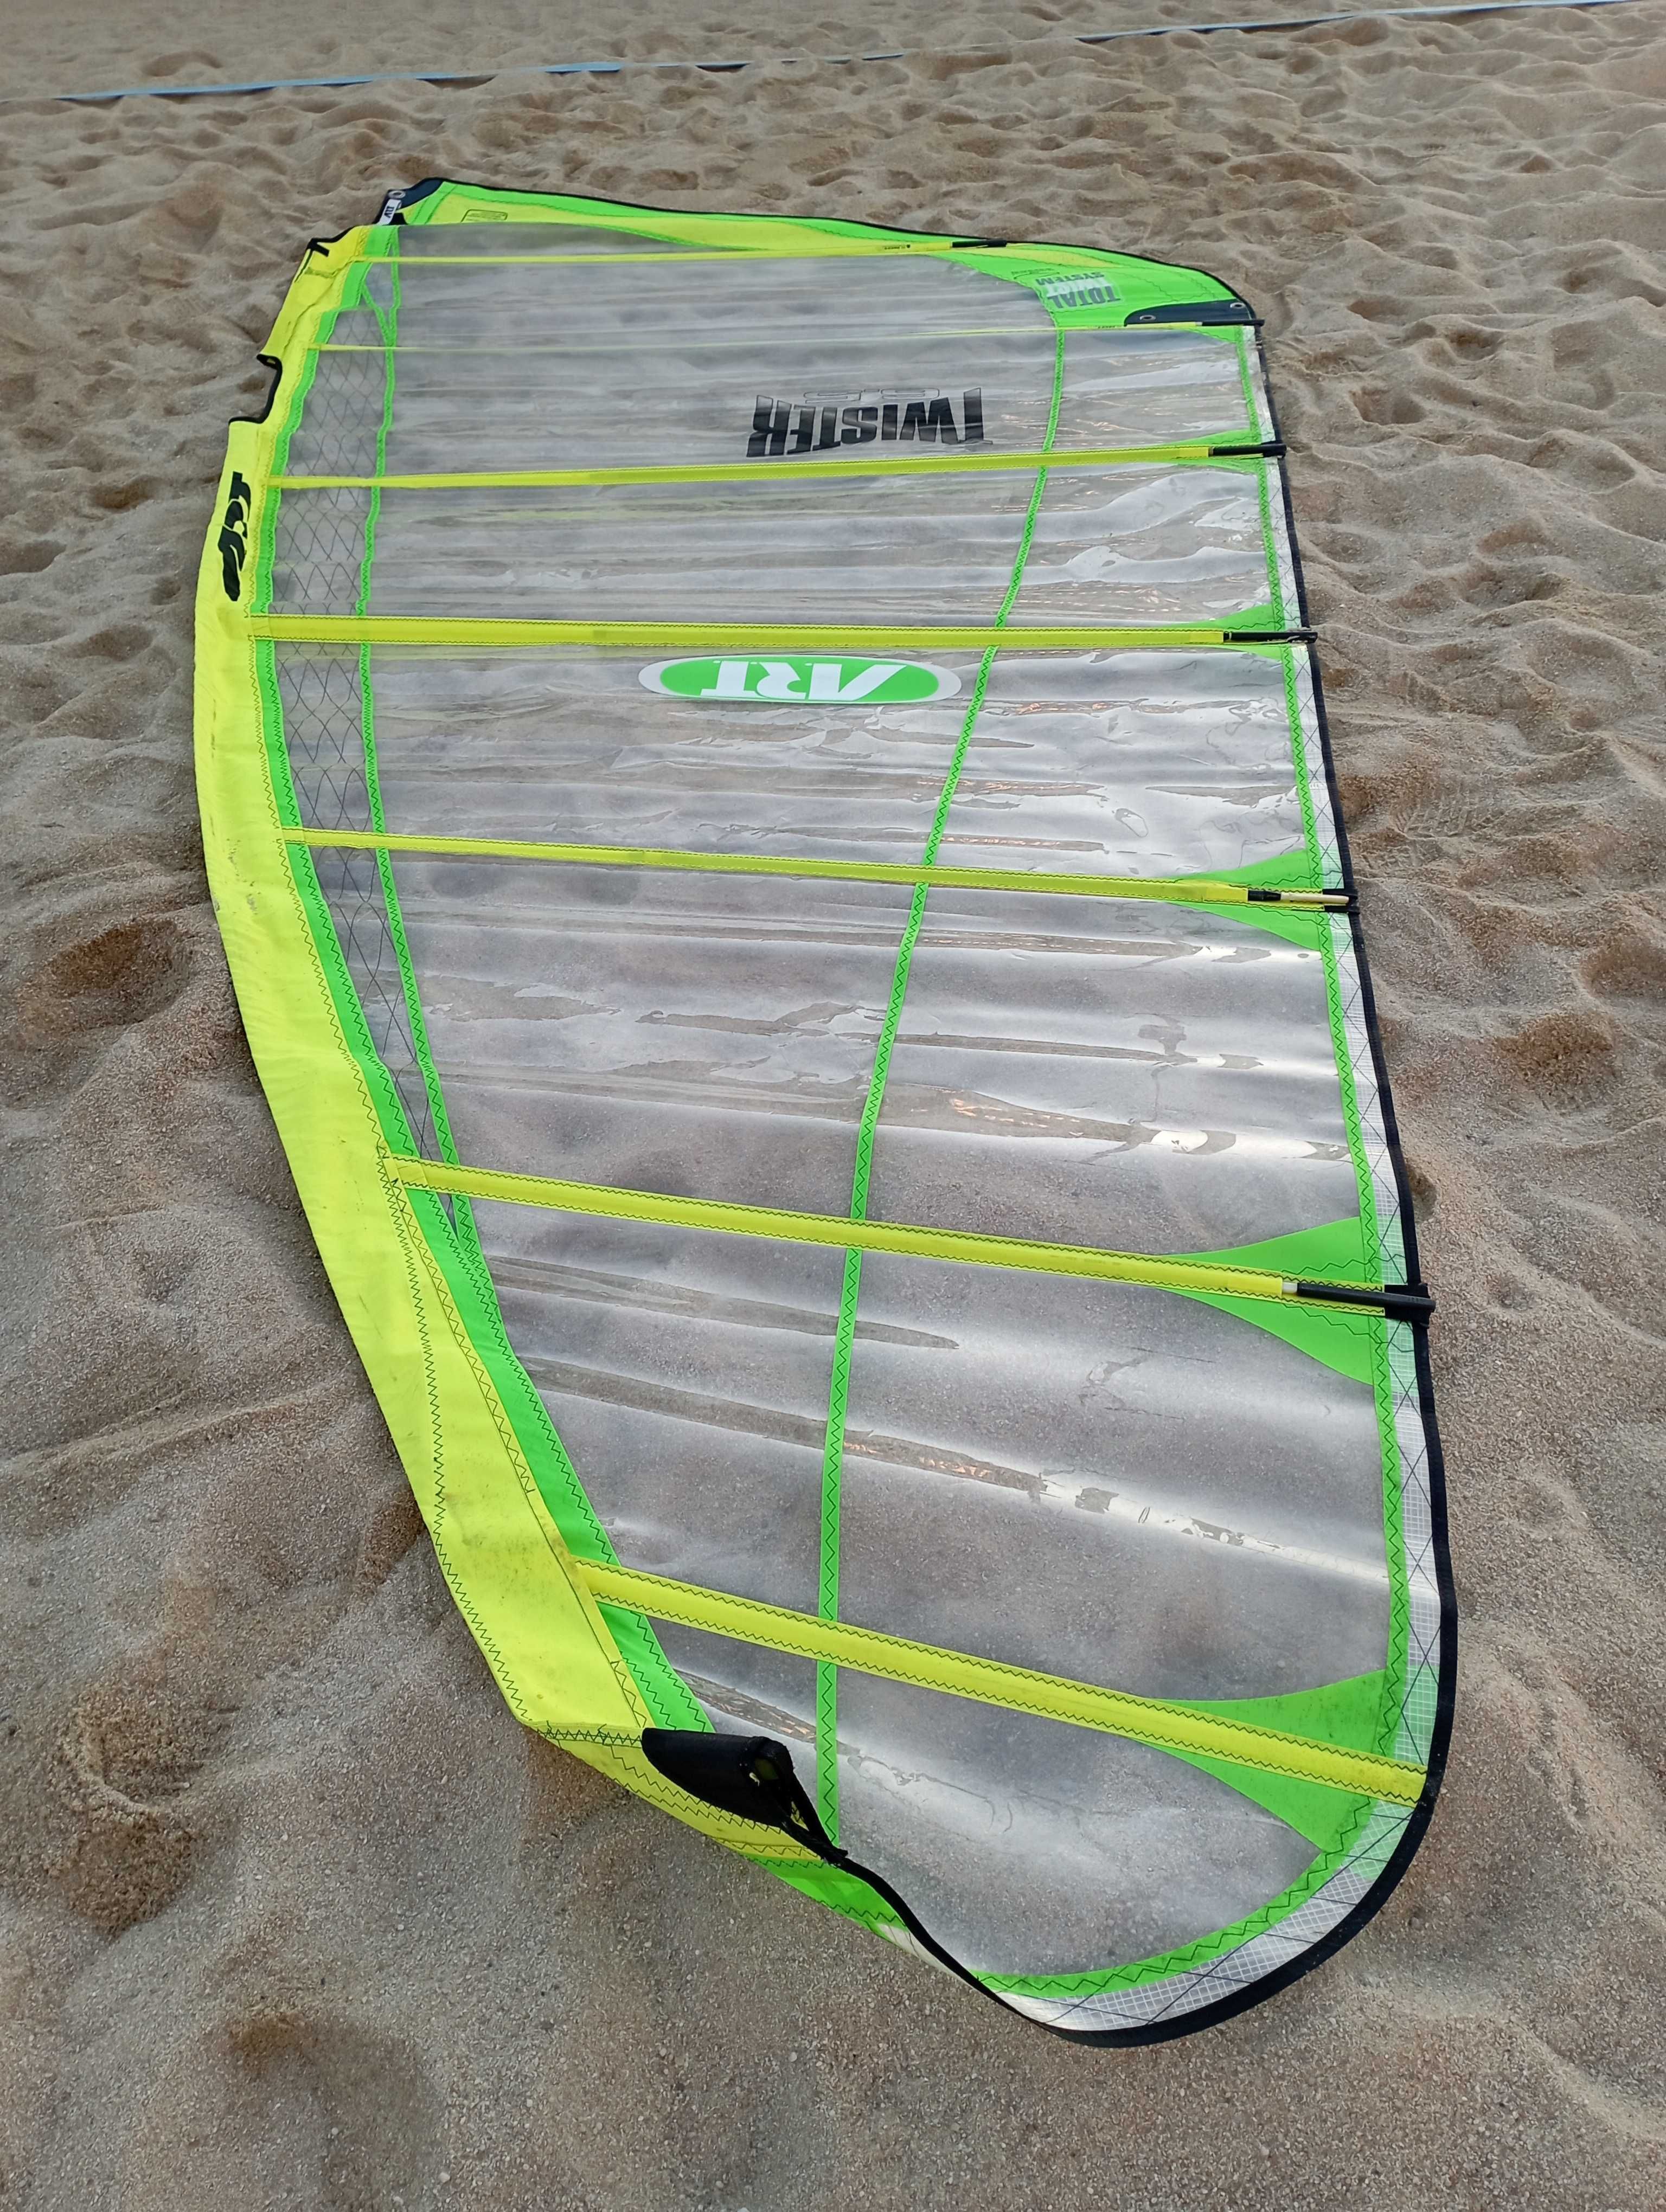 Vela de windsurf Art Twister 6.5 m2